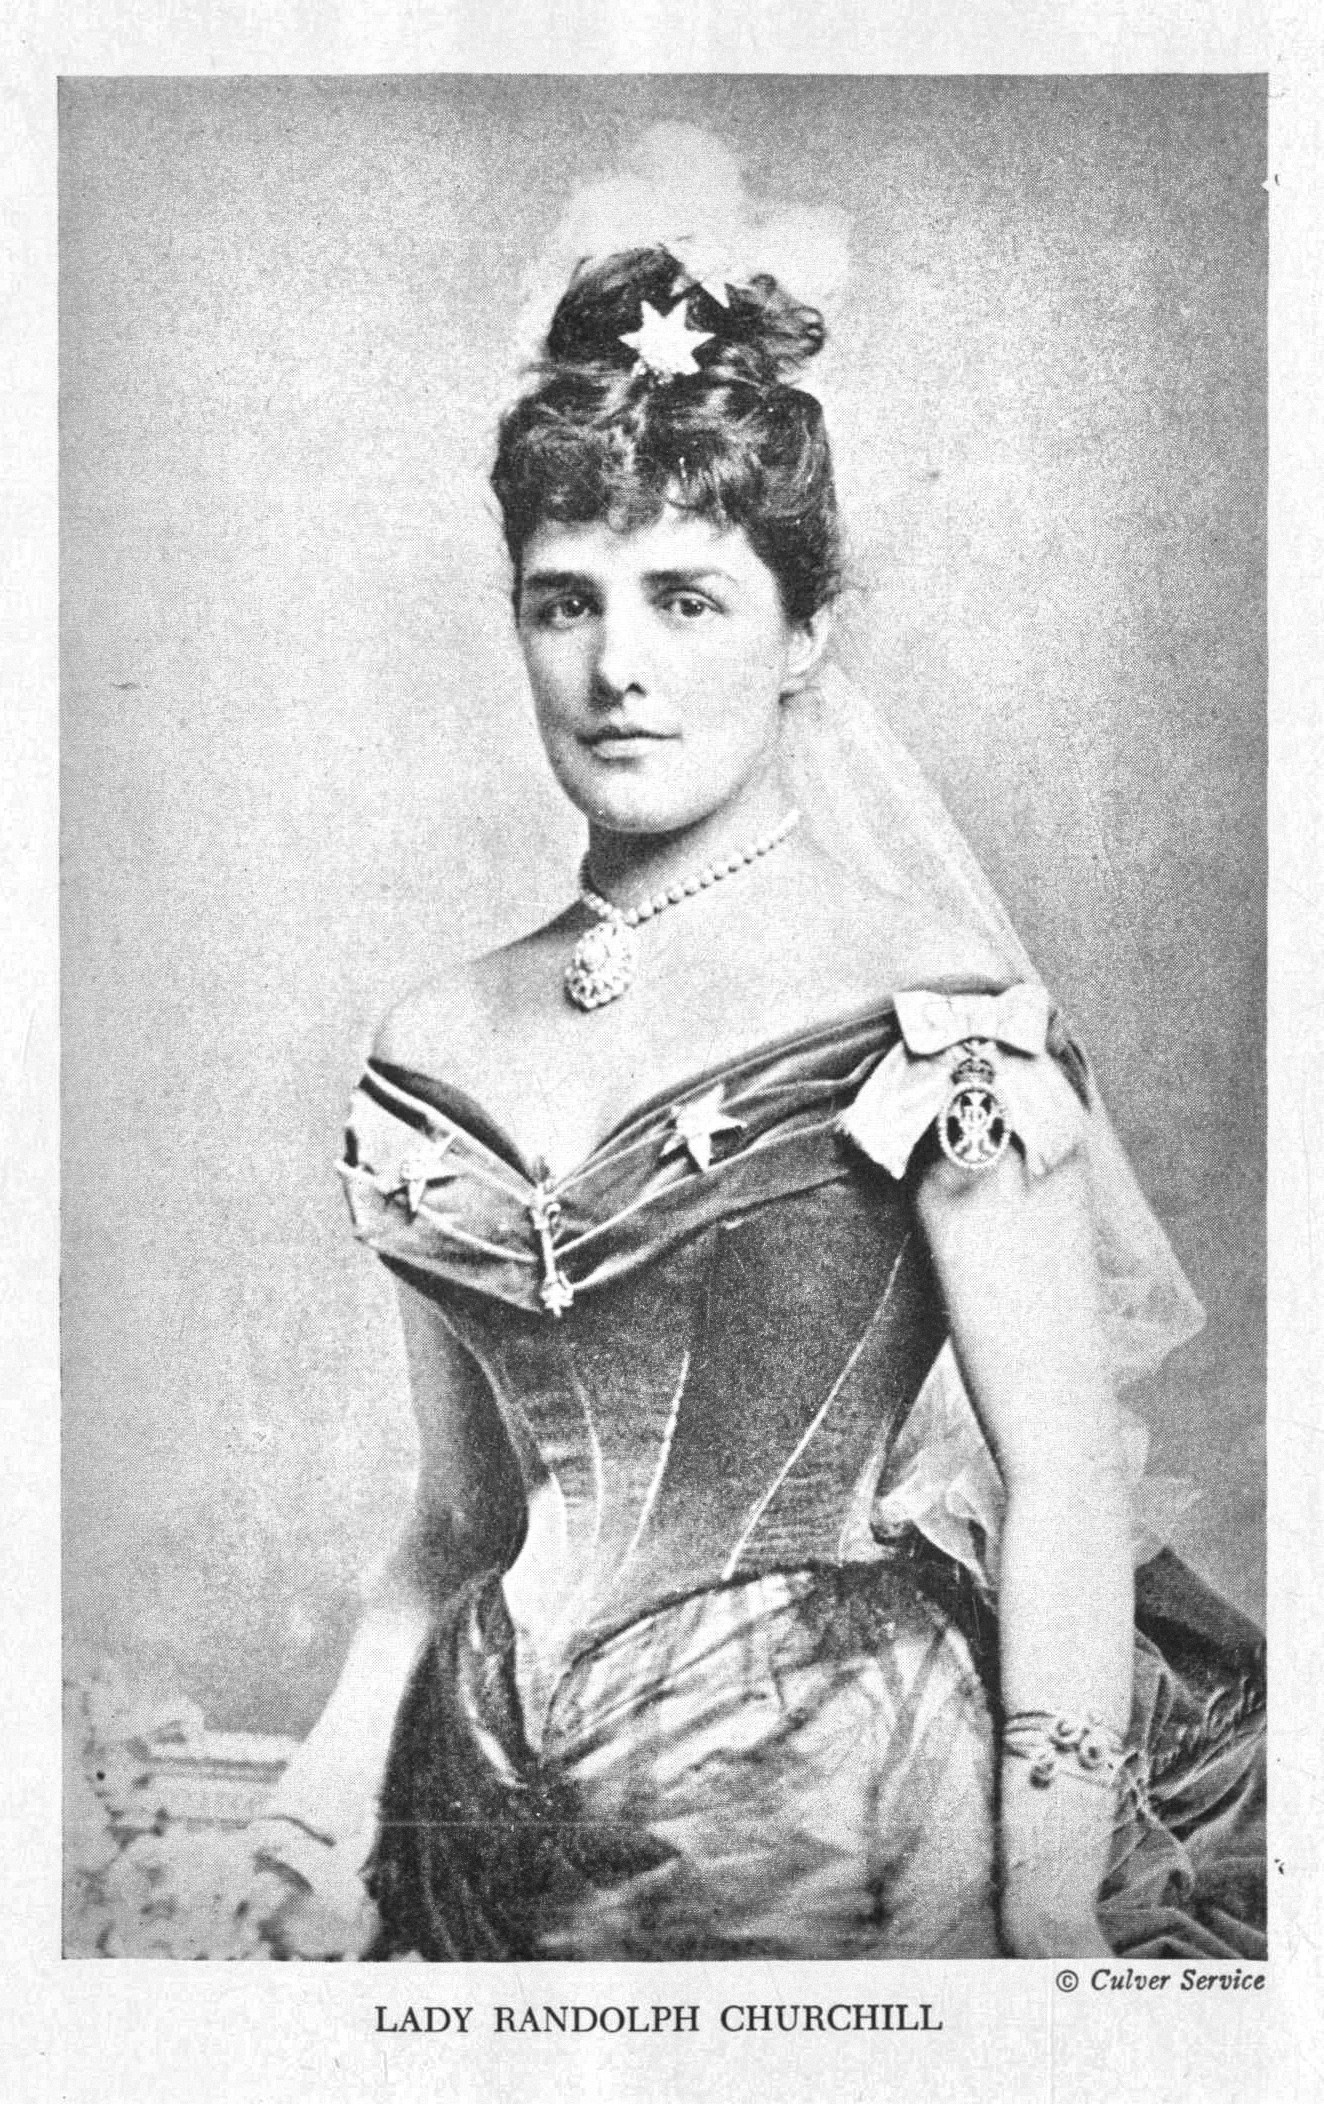 Mary Isabella Grant (d.1854), Knitting a Shawl